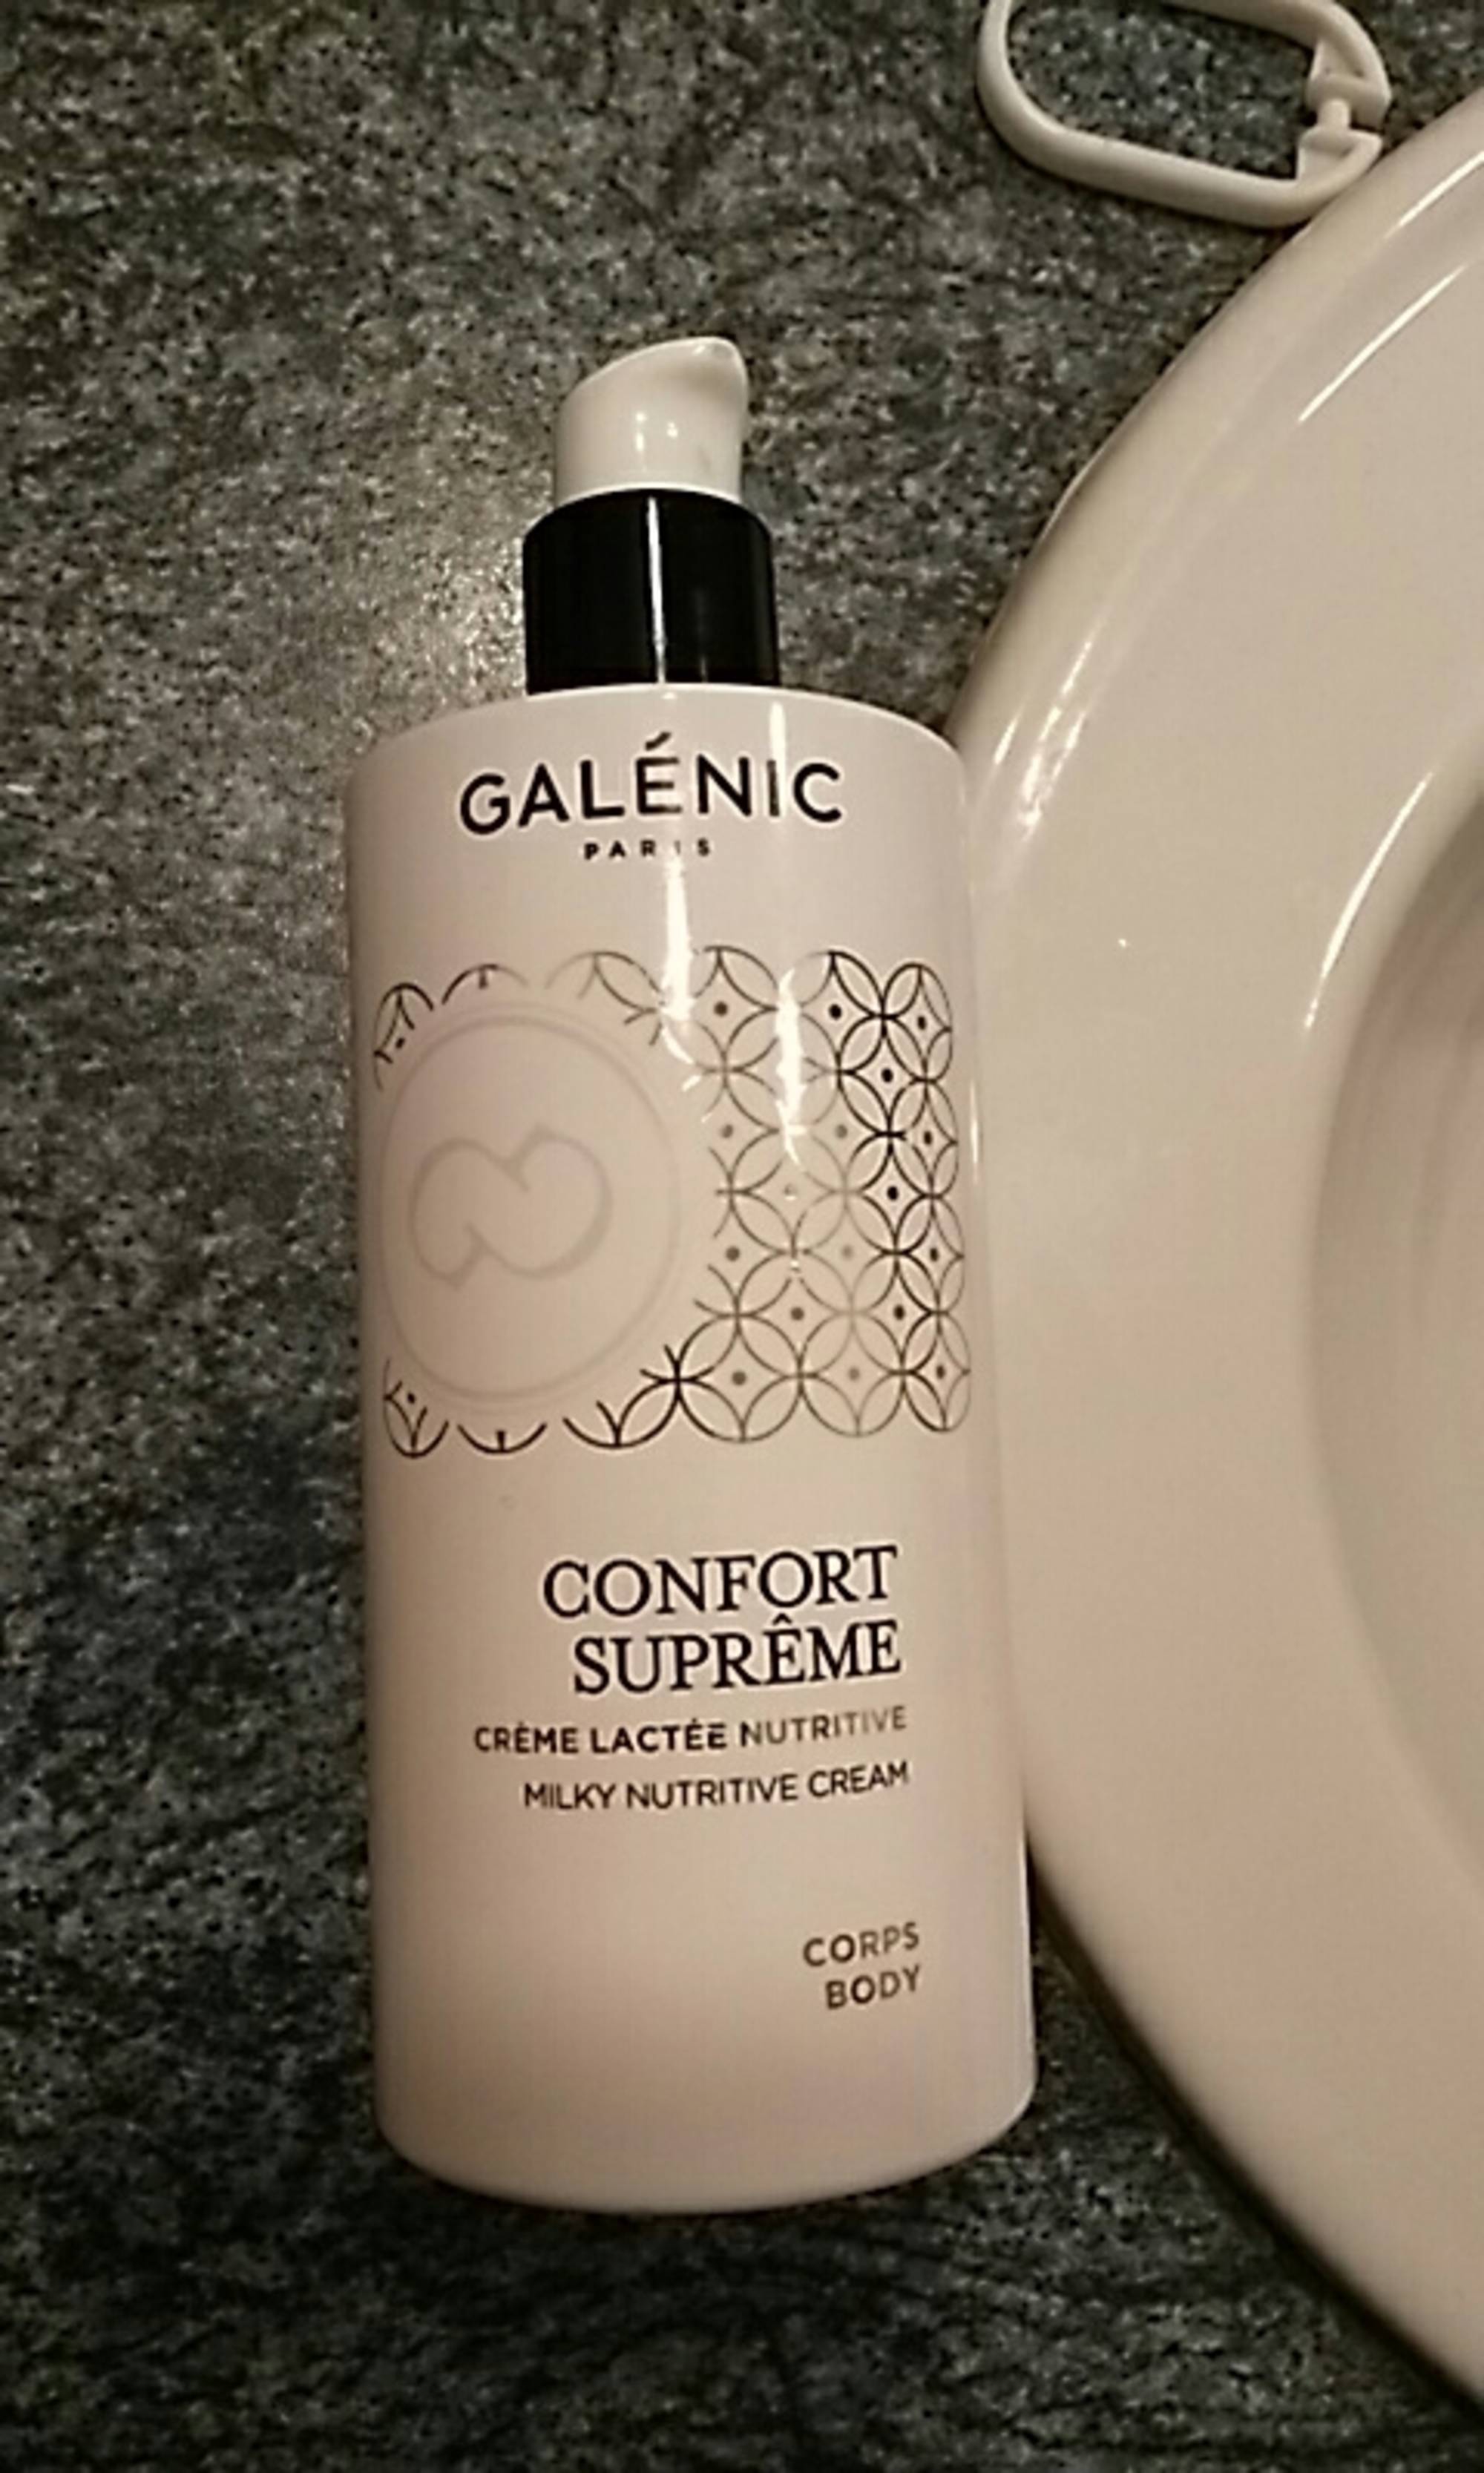 GALÉNIC - Confort suprême - Crème lactée nutritive corps